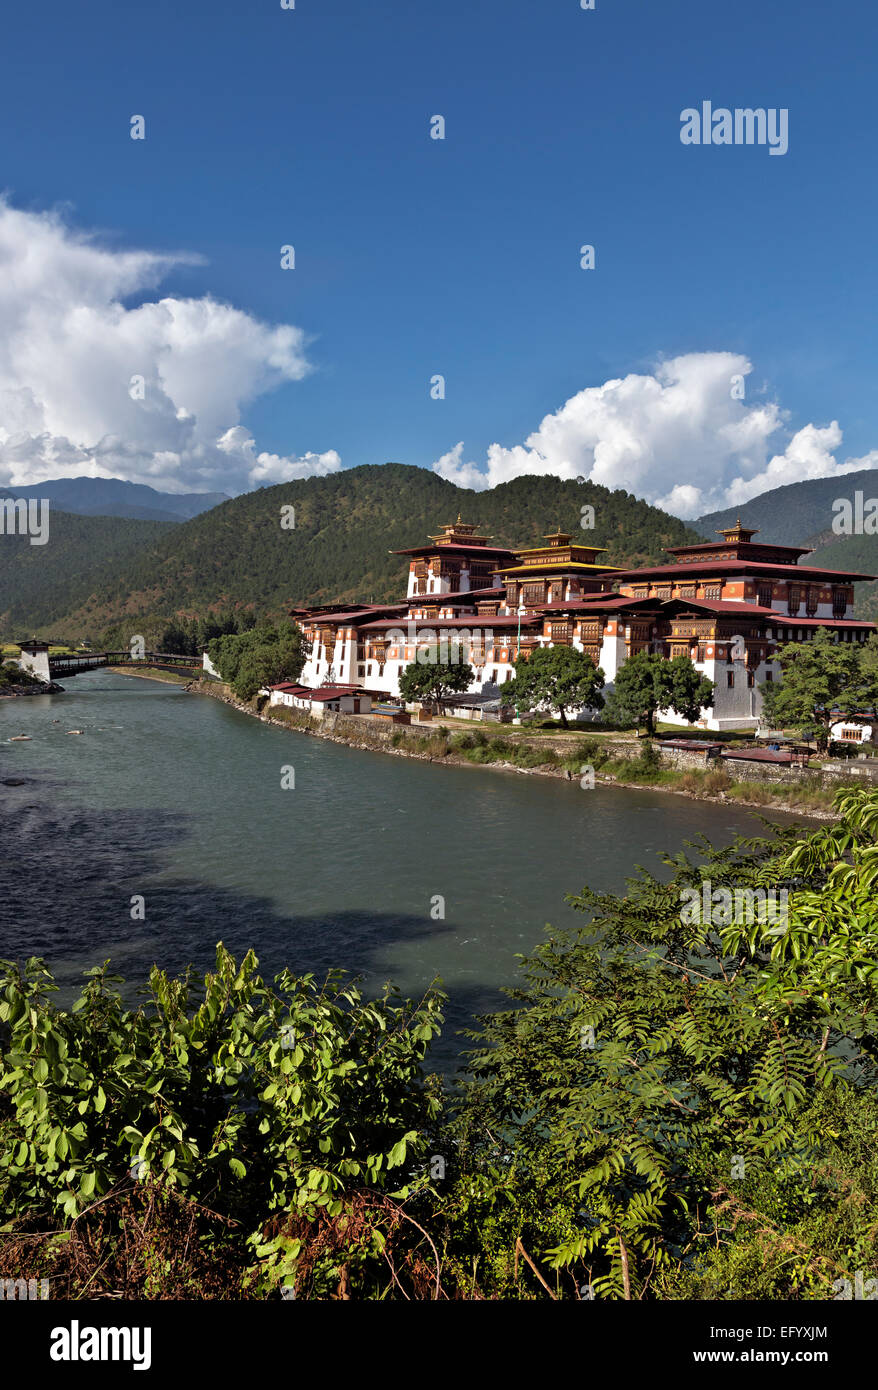 Bután - Punakha Dzong (oficinas de gobierno y el monasterio), fue la capital y sede del gobierno hasta mediados de los 1950's. Foto de stock